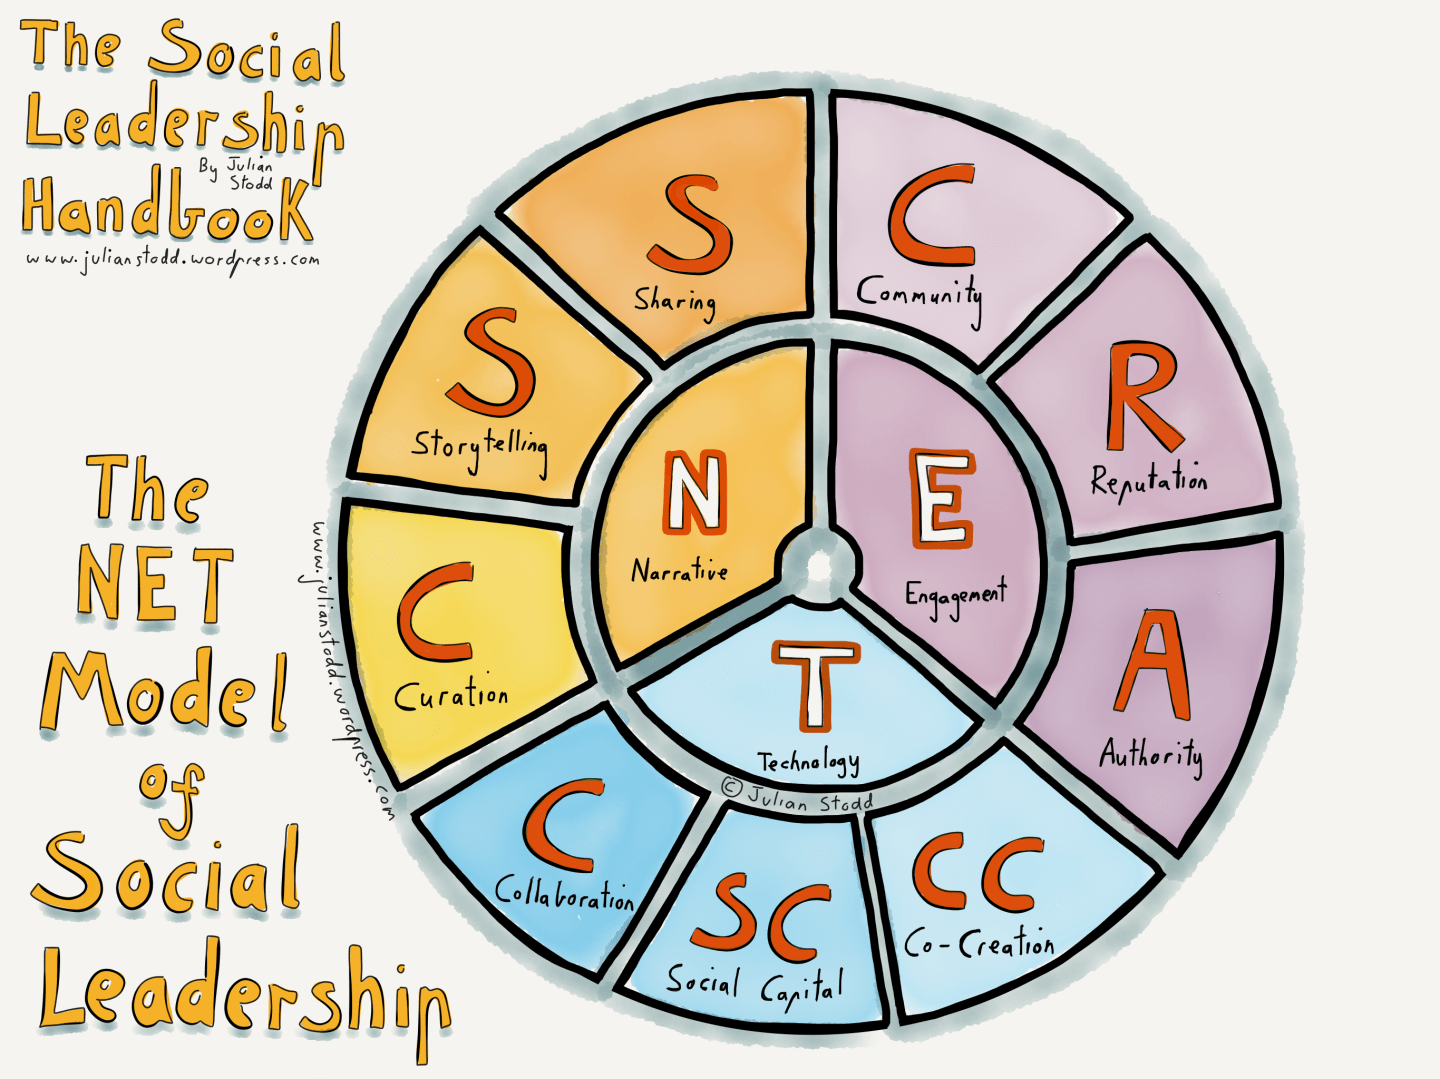 The NET model of Social Leadership